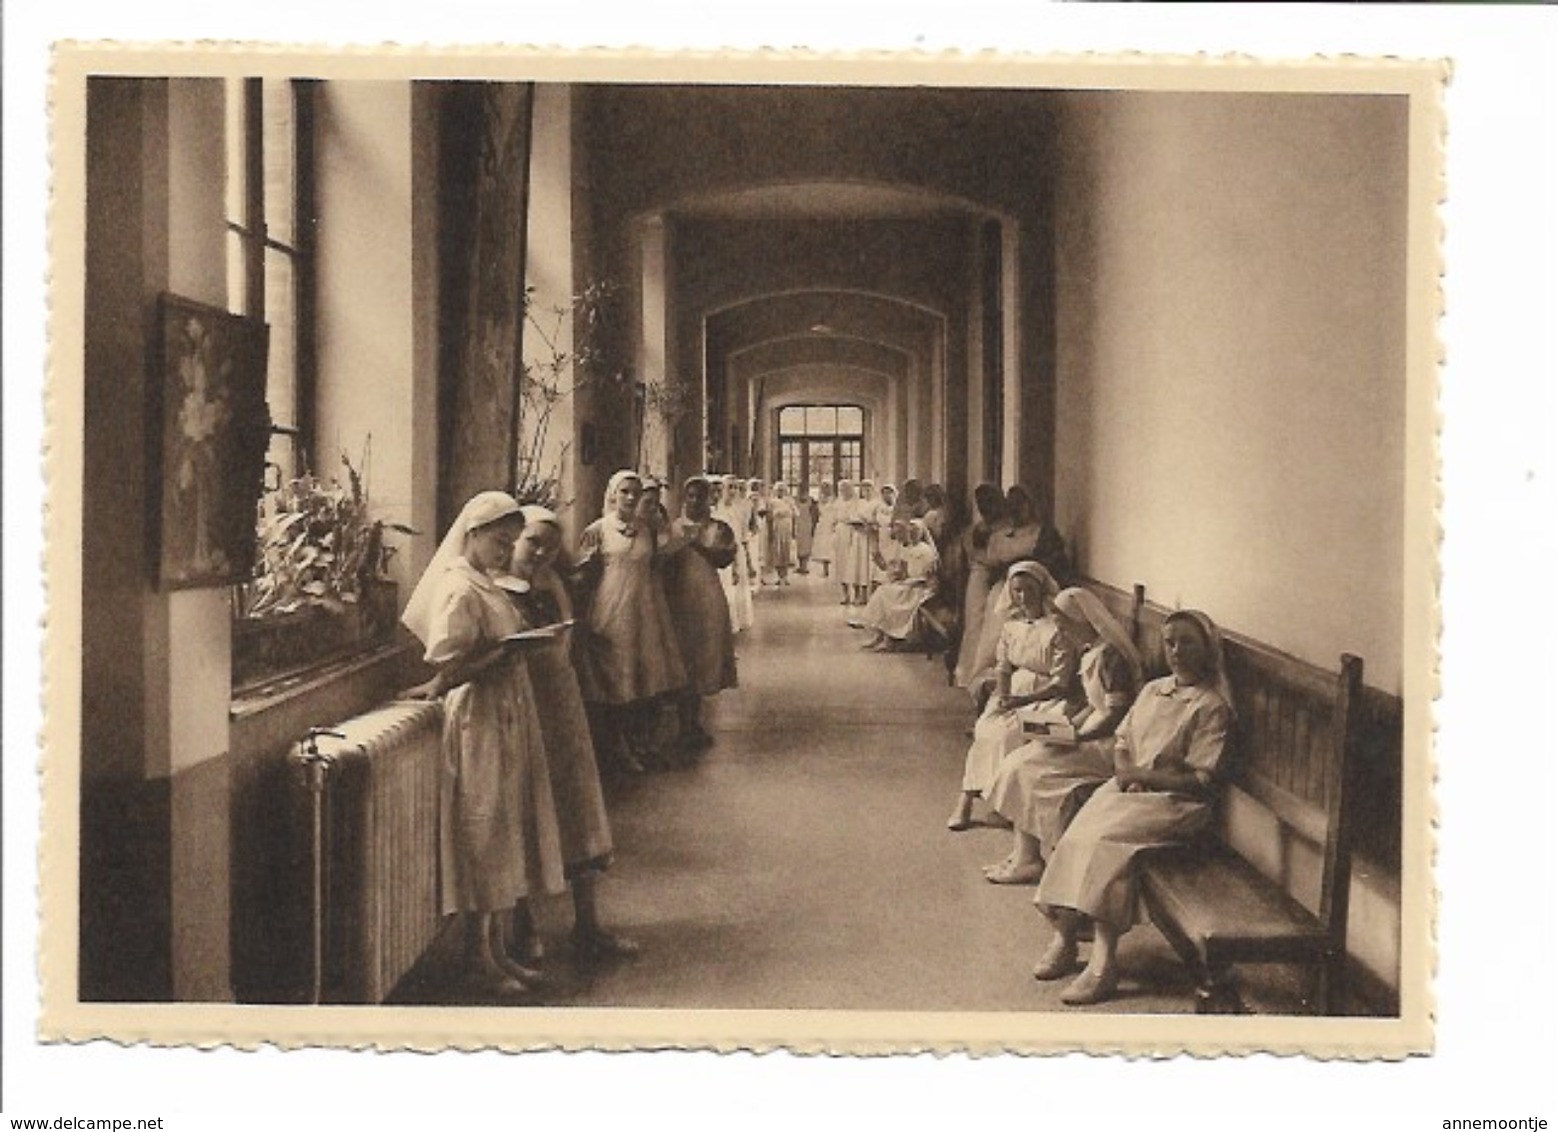 Serie van 12 postkaarten Auderghem - Institut du Sacré-coeur.